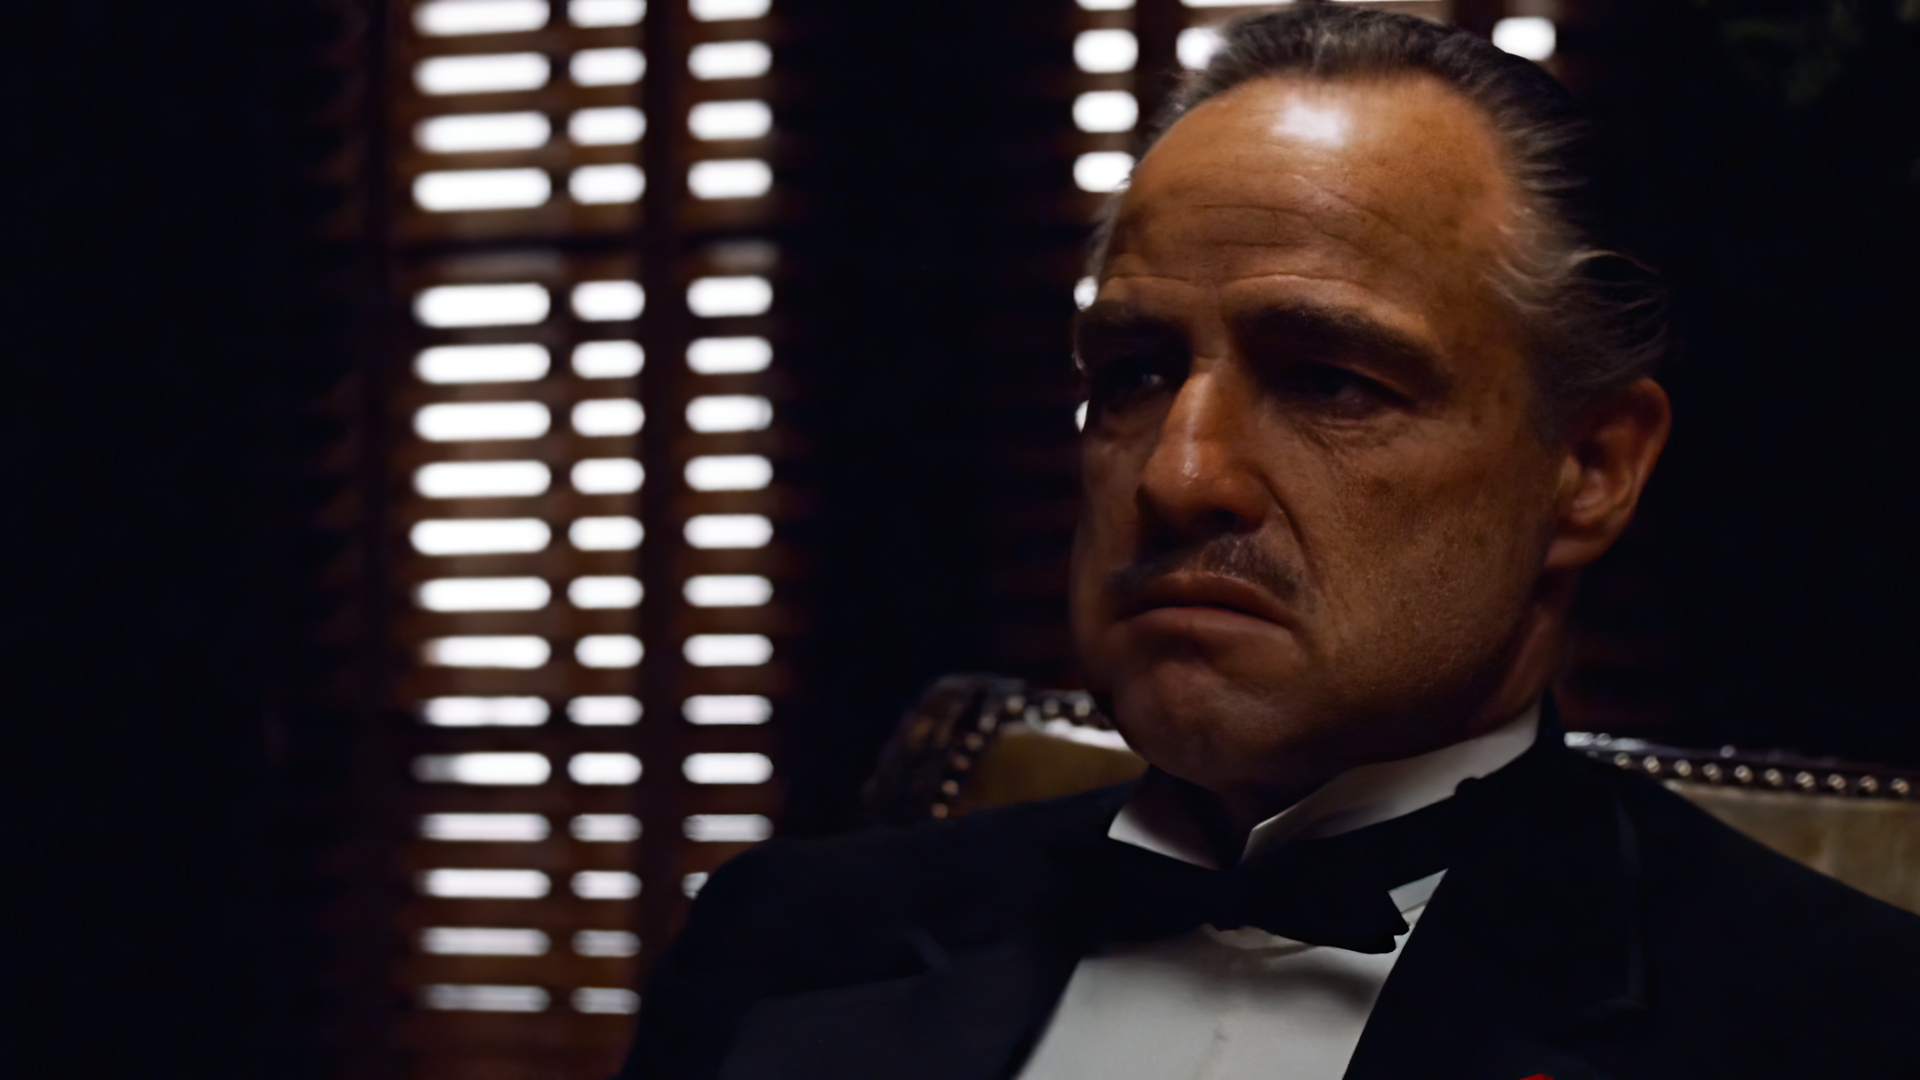 The Godfather Vito Corleone Marlon Brando Actor Movies Film Stills Francis Ford Coppola Mafia 1920x1080